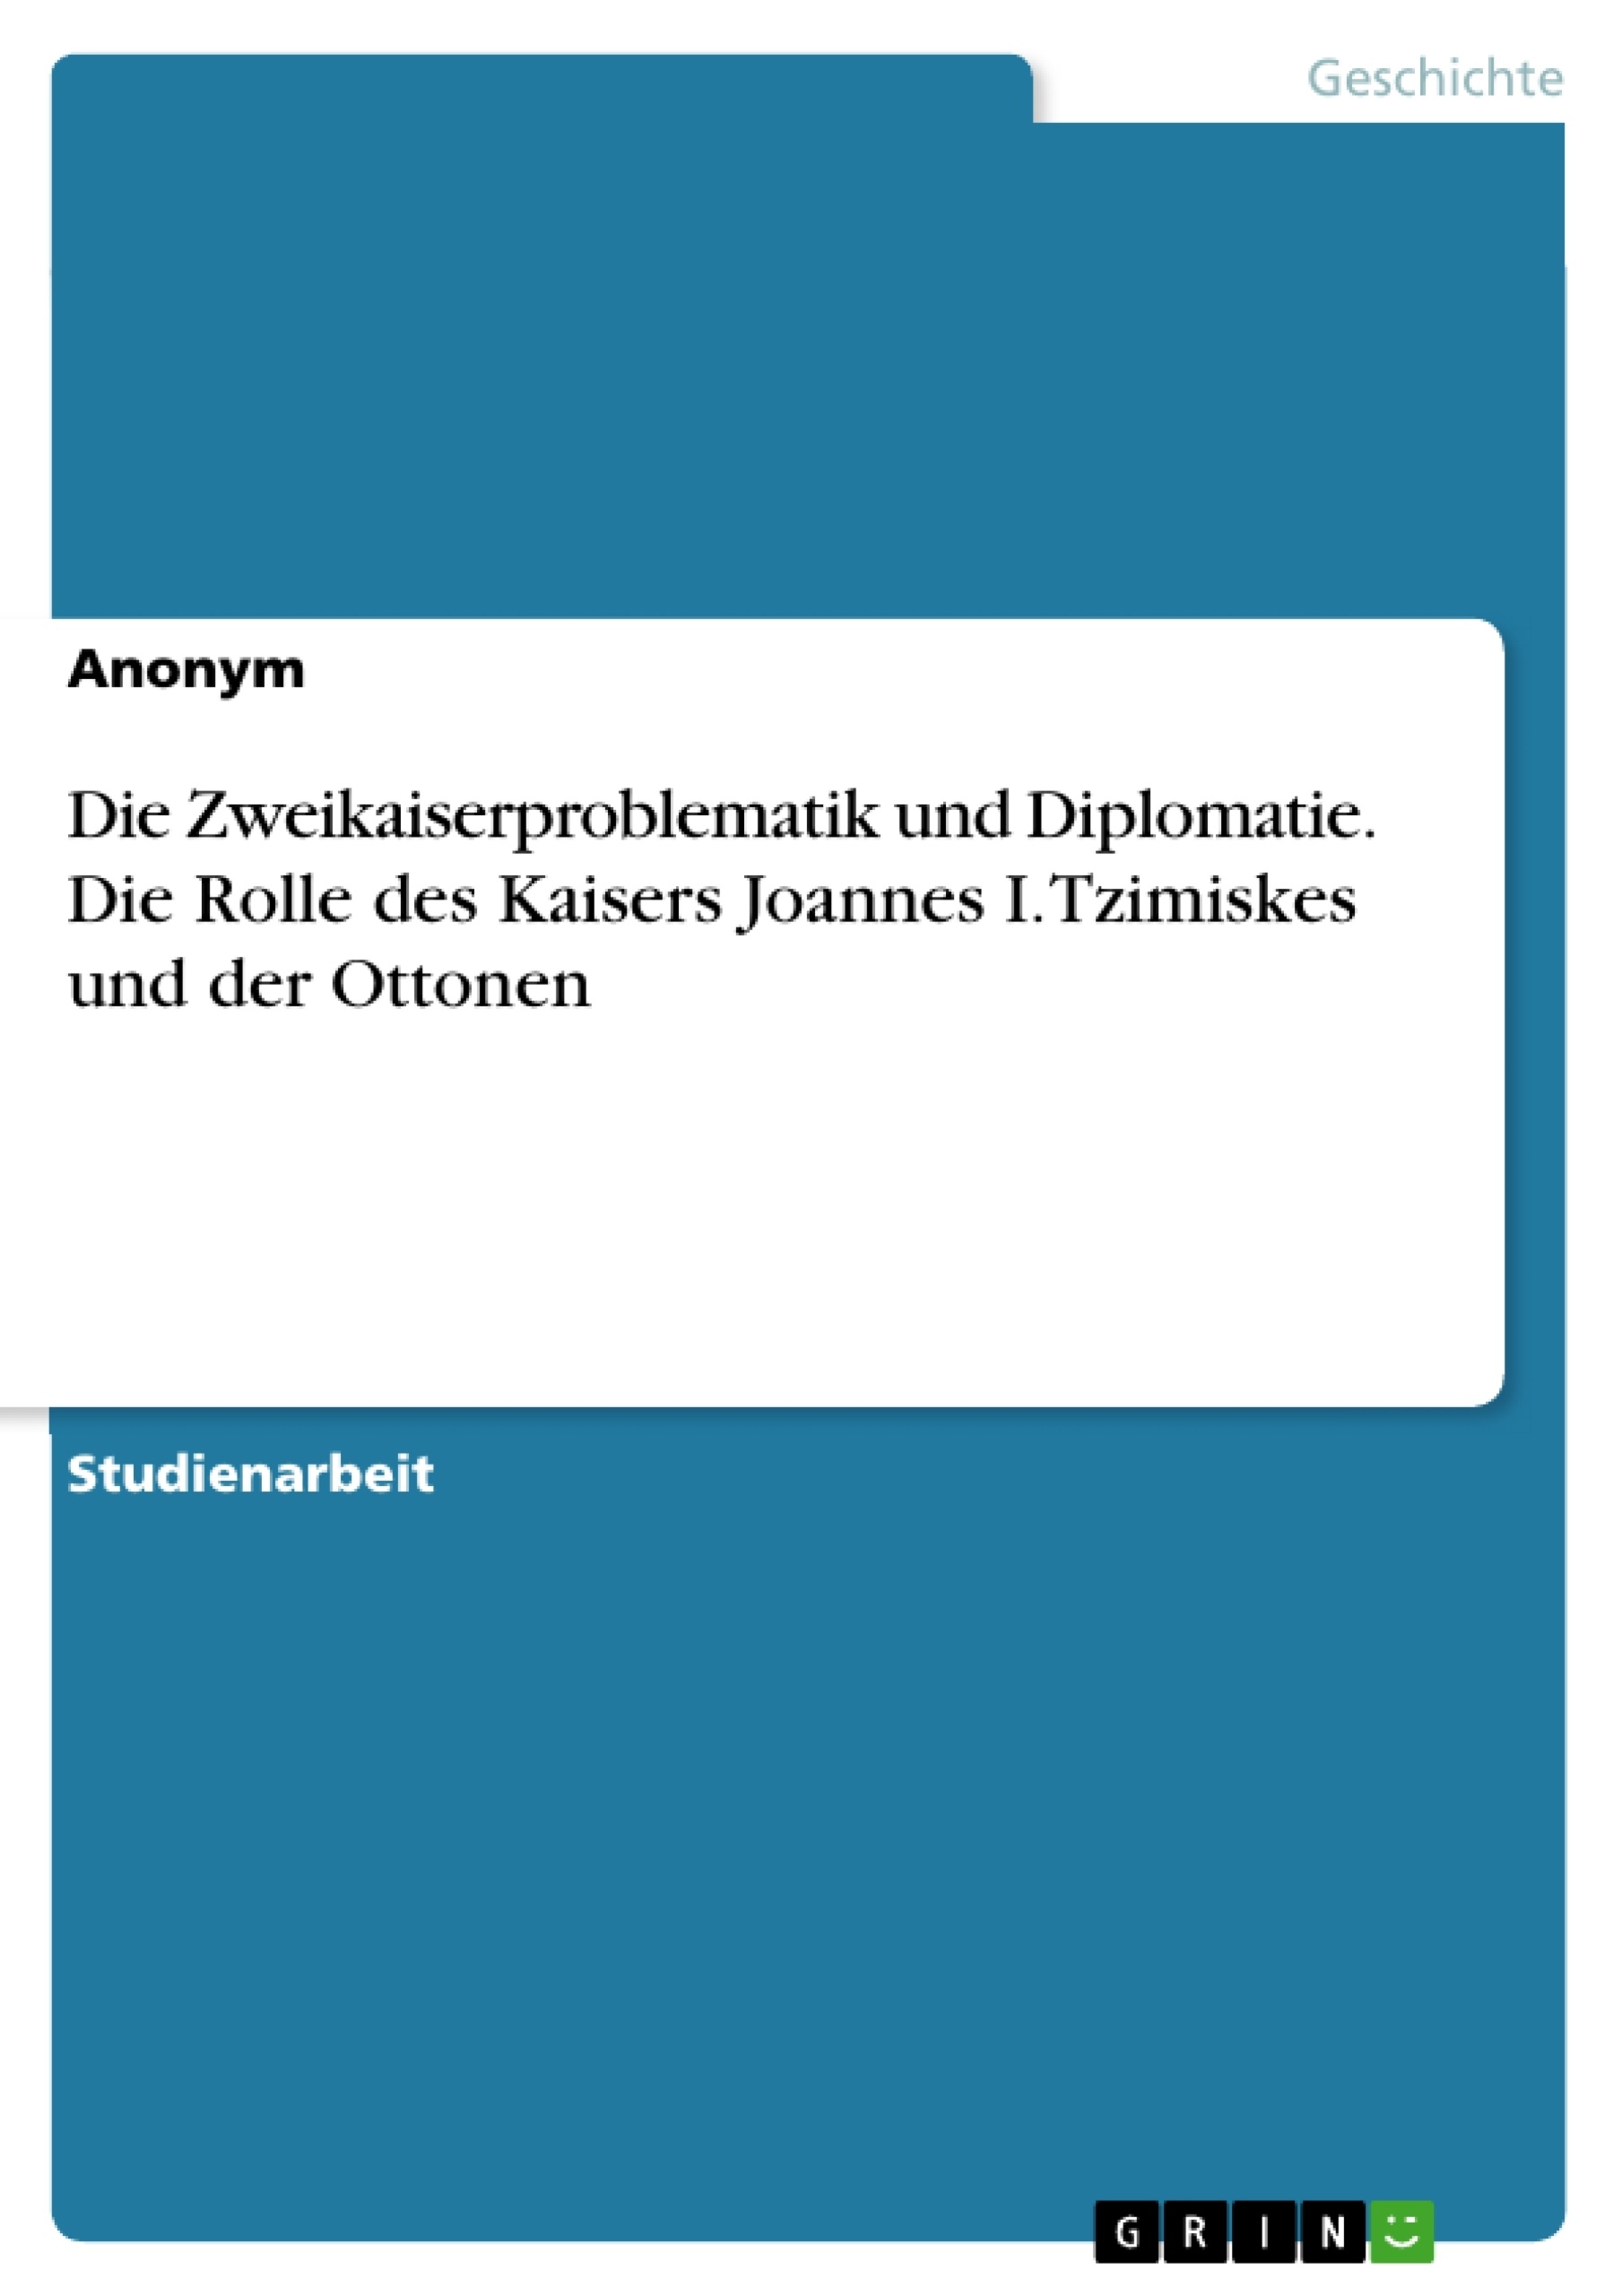 Title: Die Zweikaiserproblematik und Diplomatie. Die Rolle des Kaisers Joannes I. Tzimiskes und der Ottonen